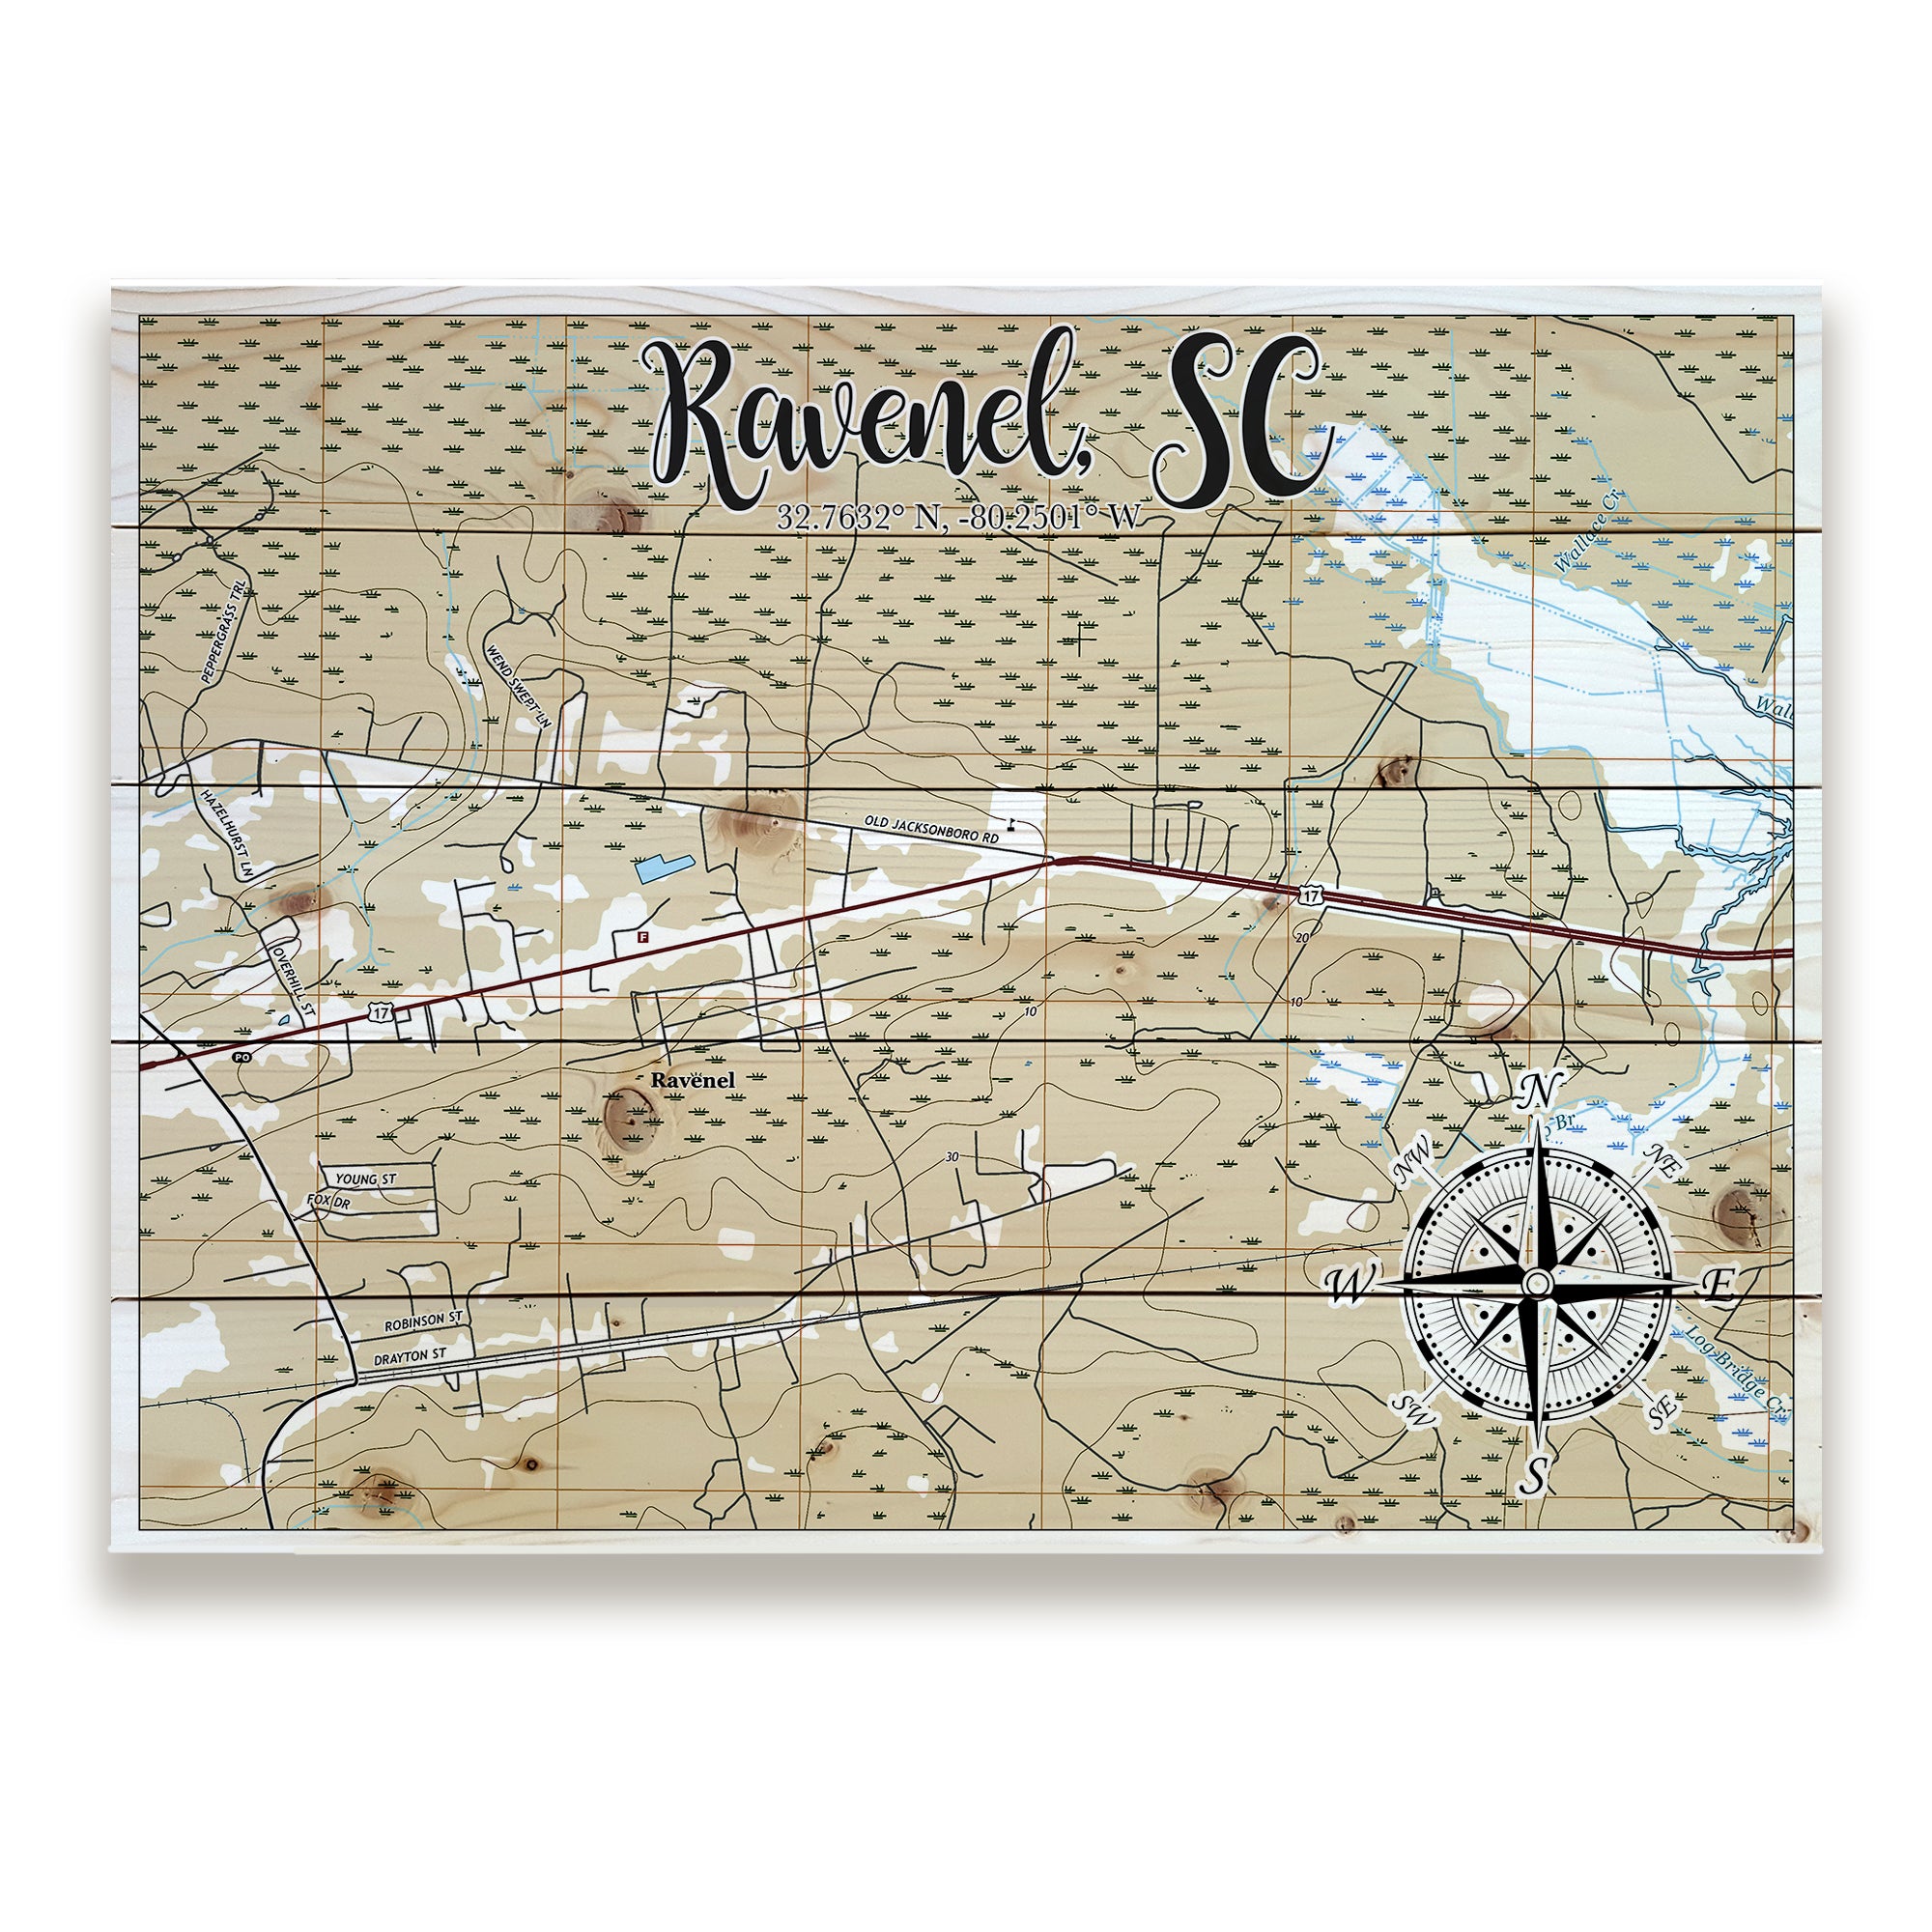 Ravenel, SC Pallet Map